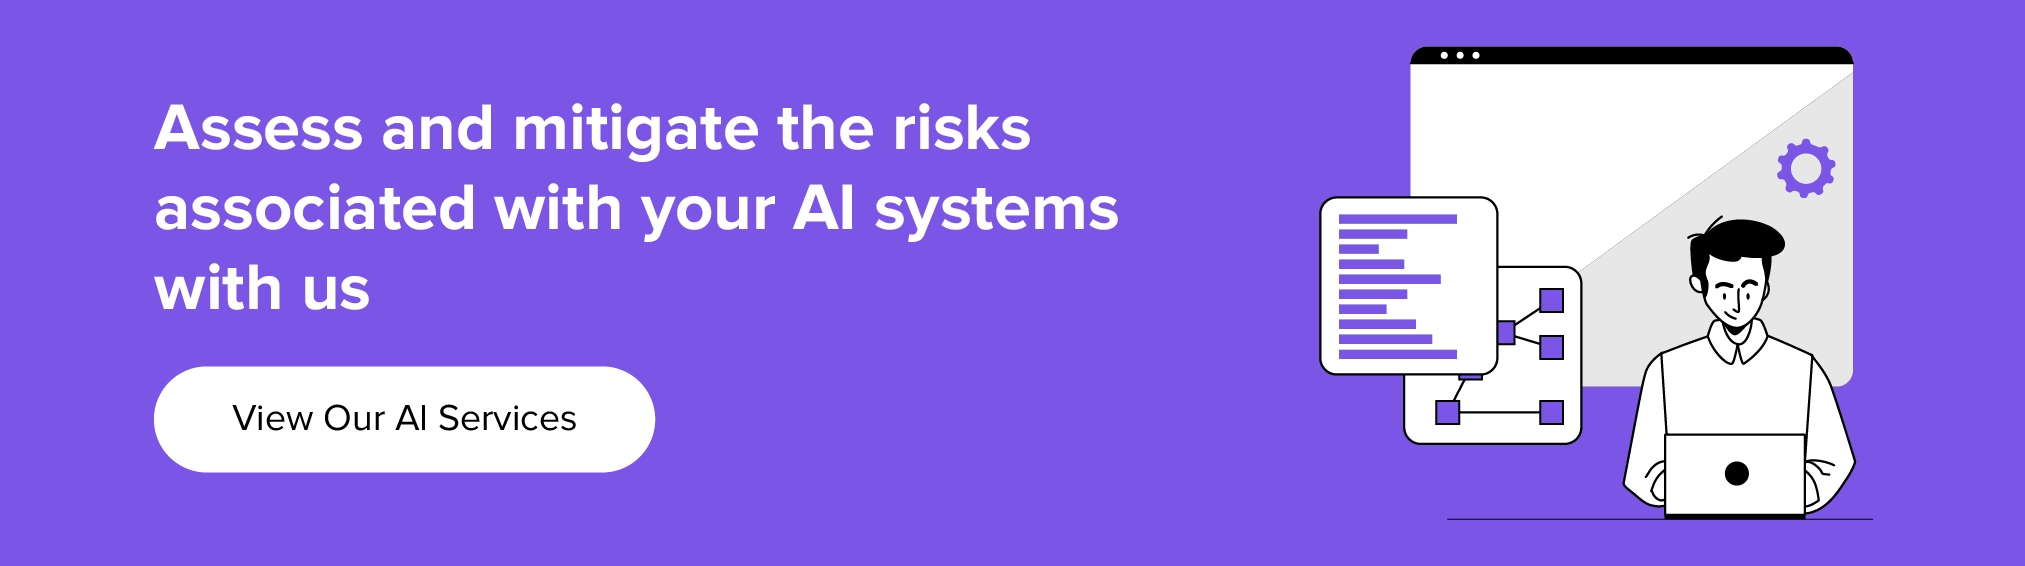 ร่วมมือกับเราเพื่อประเมินและลดความเสี่ยงที่เกี่ยวข้องกับระบบ AI ของคุณ